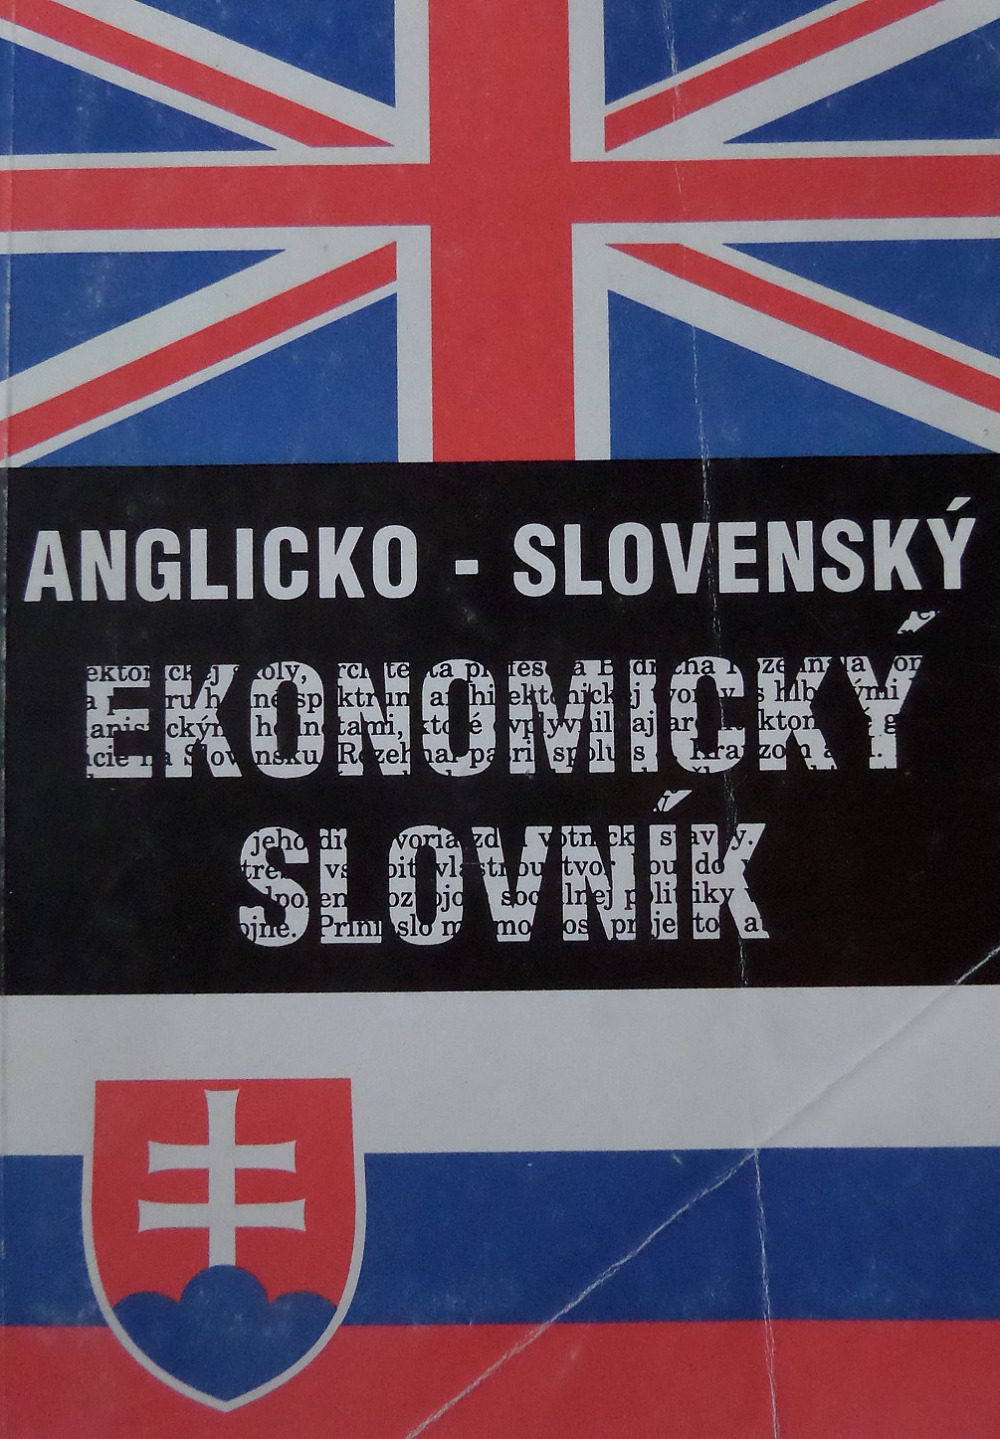 Anglicko-slovenský ekonomický slovník